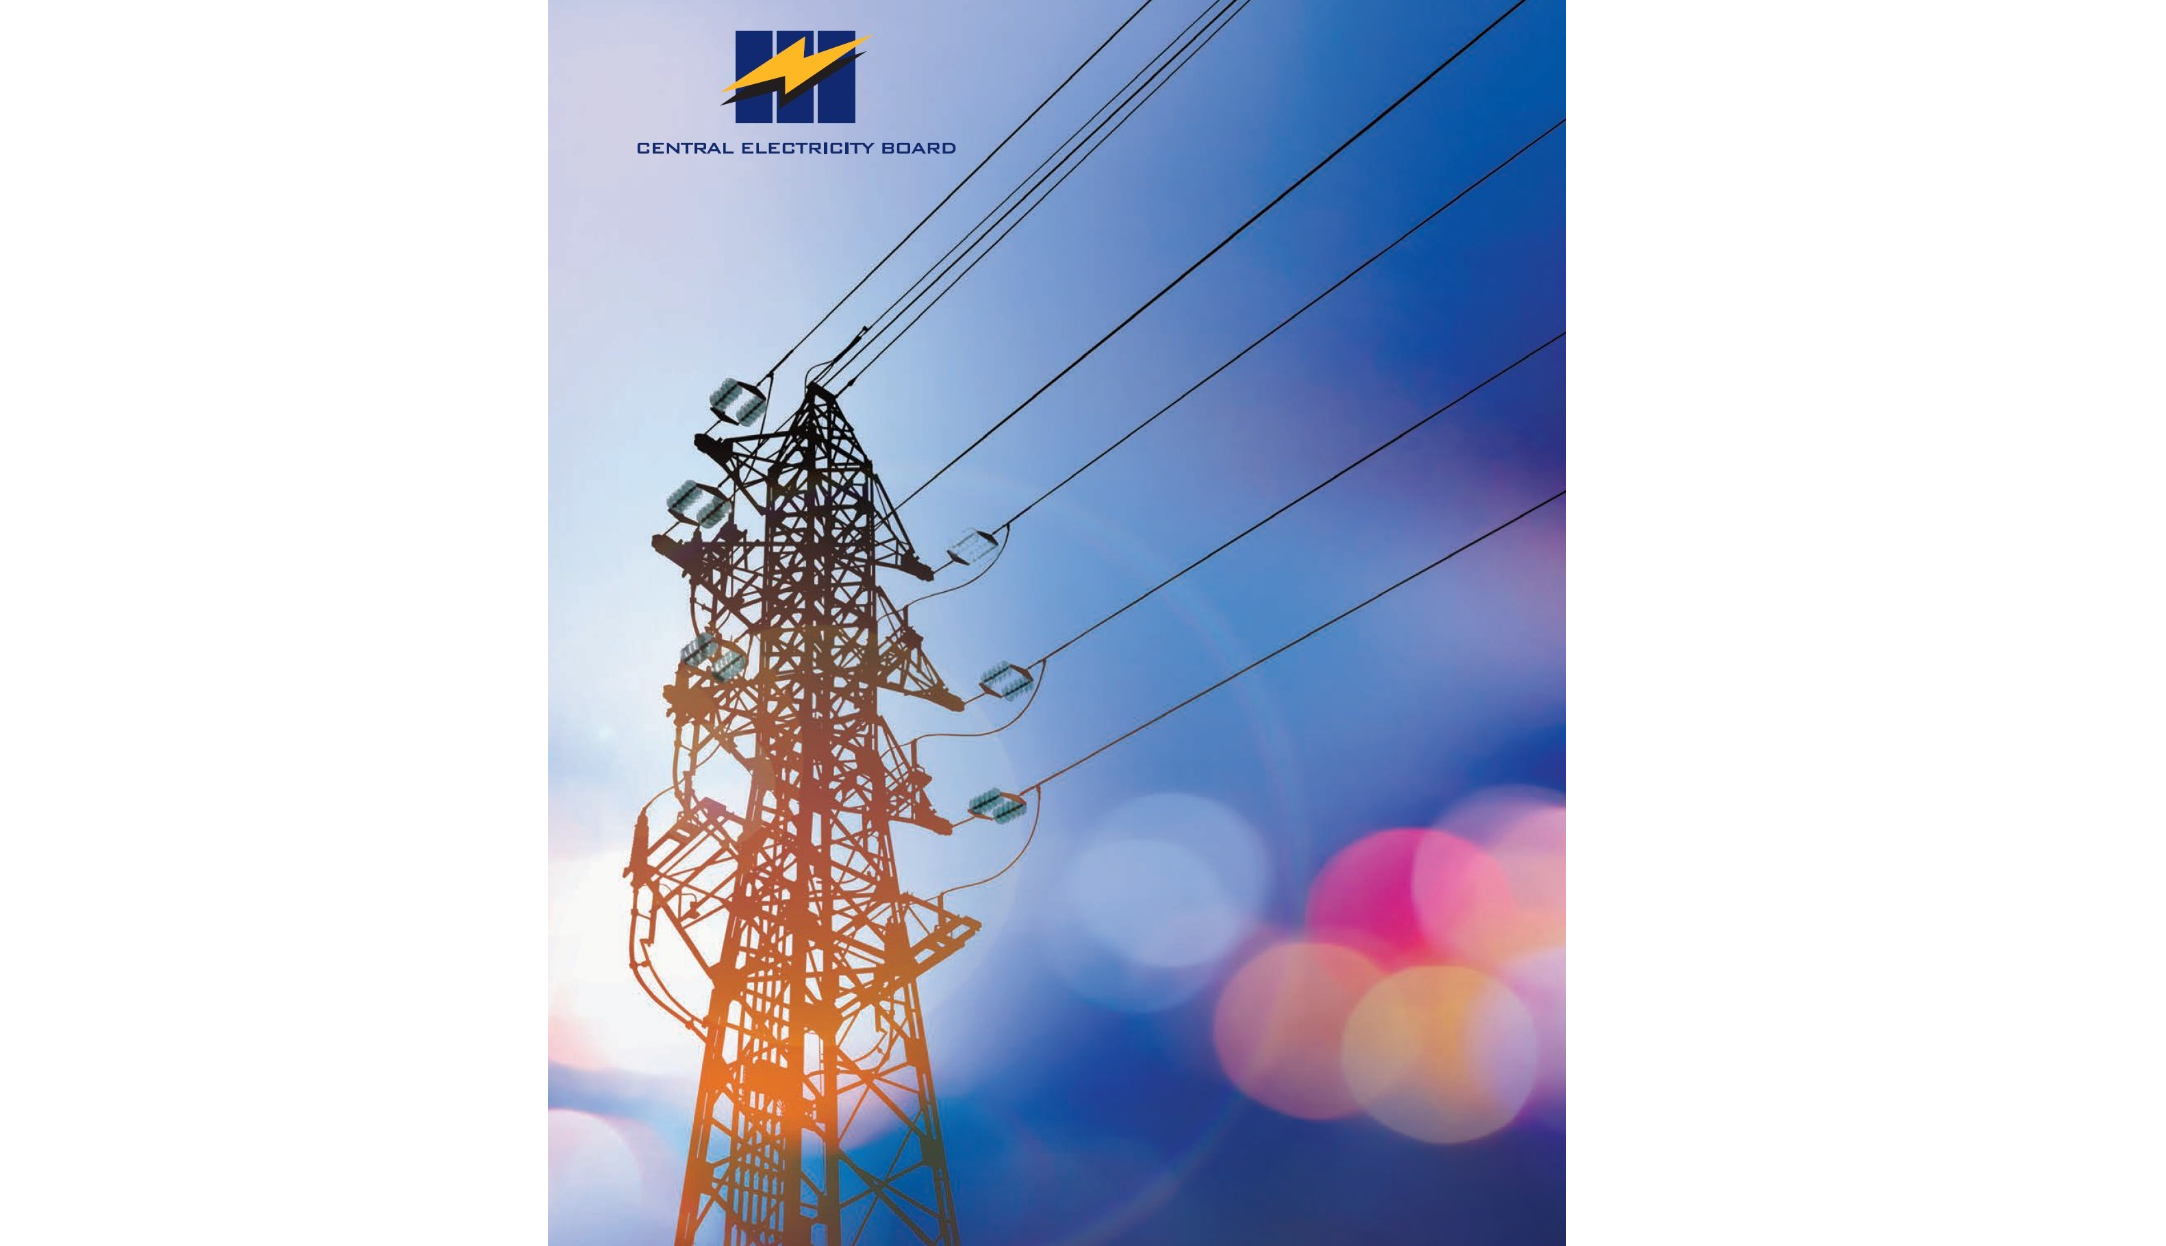 L'Utility Regulatory Authority désormais régulateur du Central Electricity Board